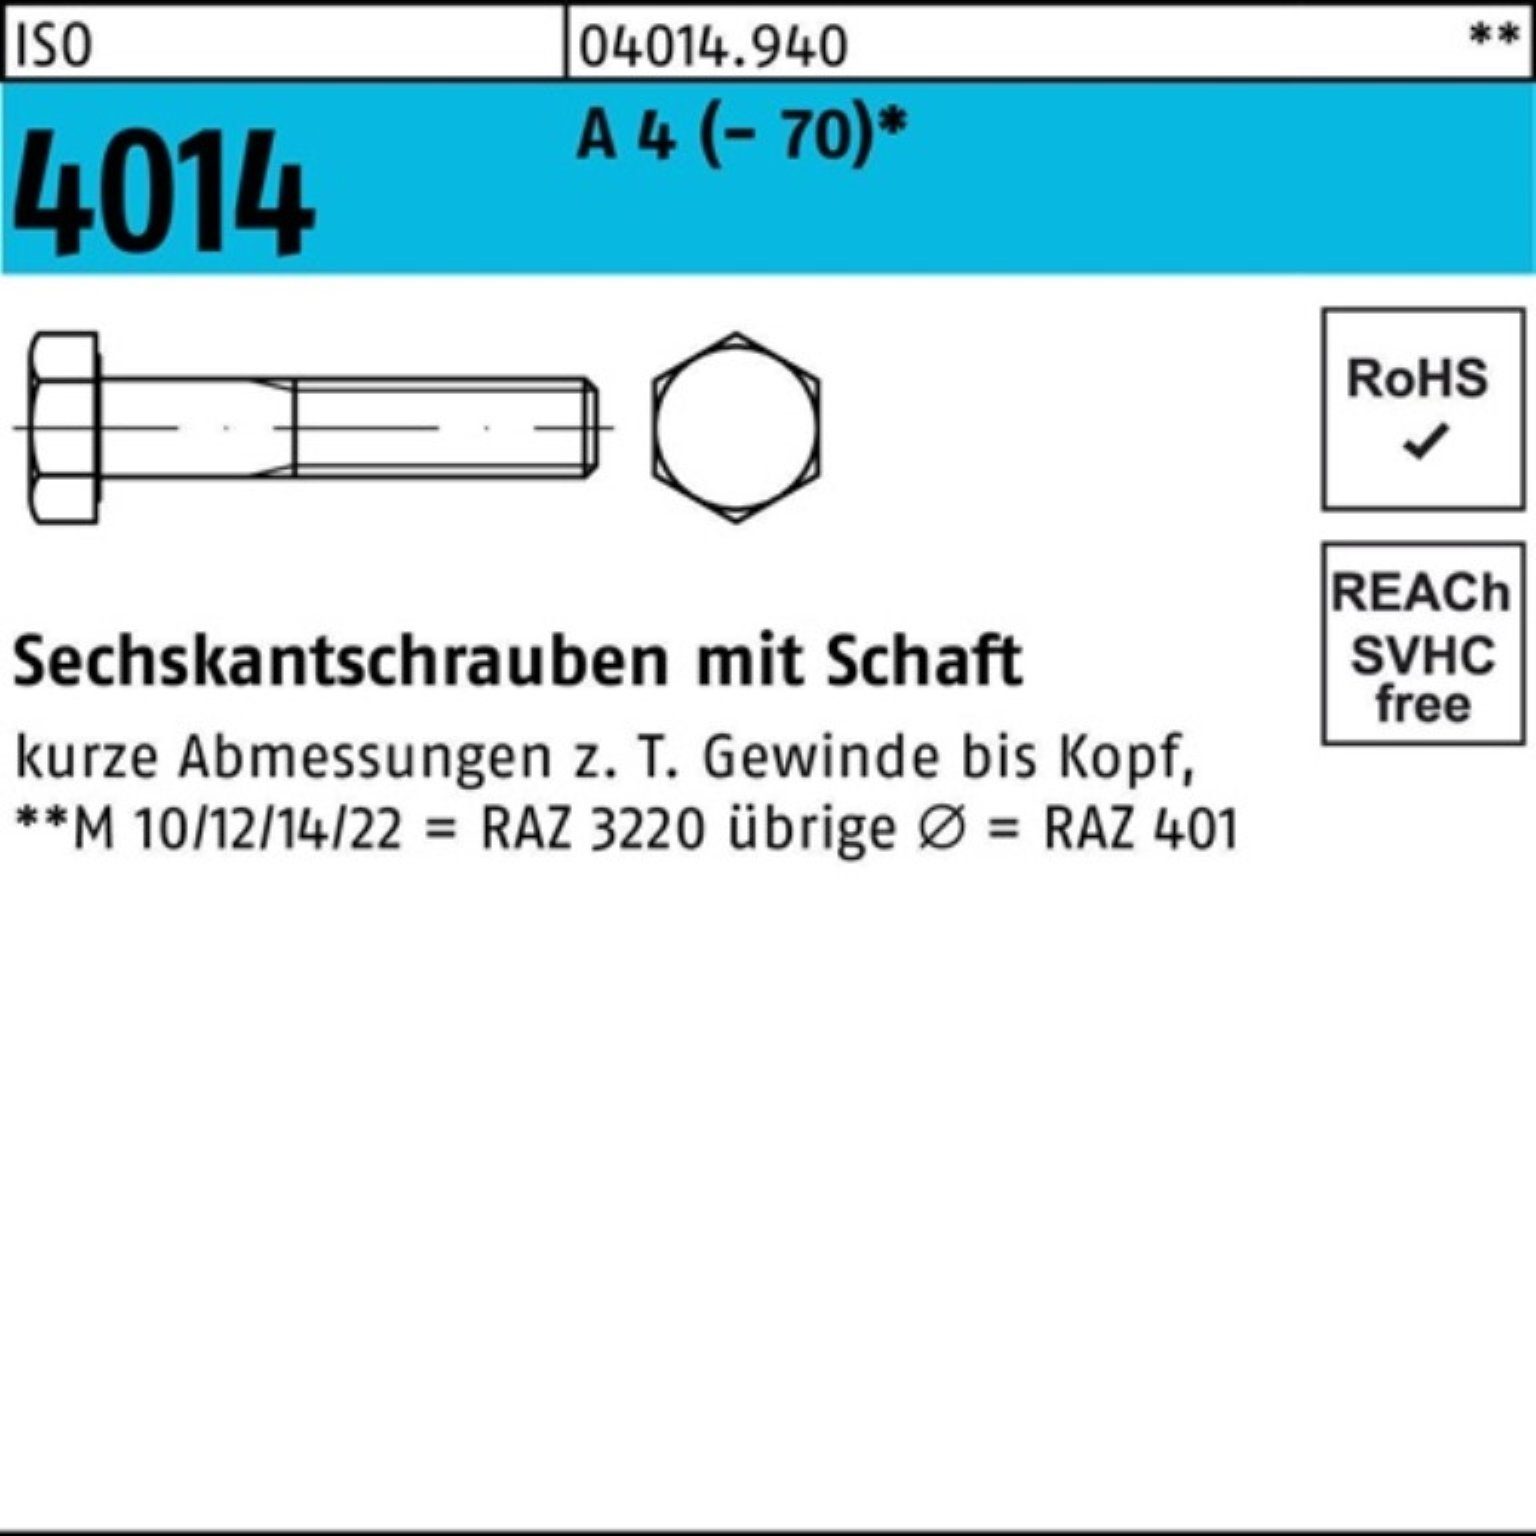 (70) Pack Sechskantschraube Bufab 4014 4 ISO 25 Sechskantschraube Schaft A St 90 M16x 100er